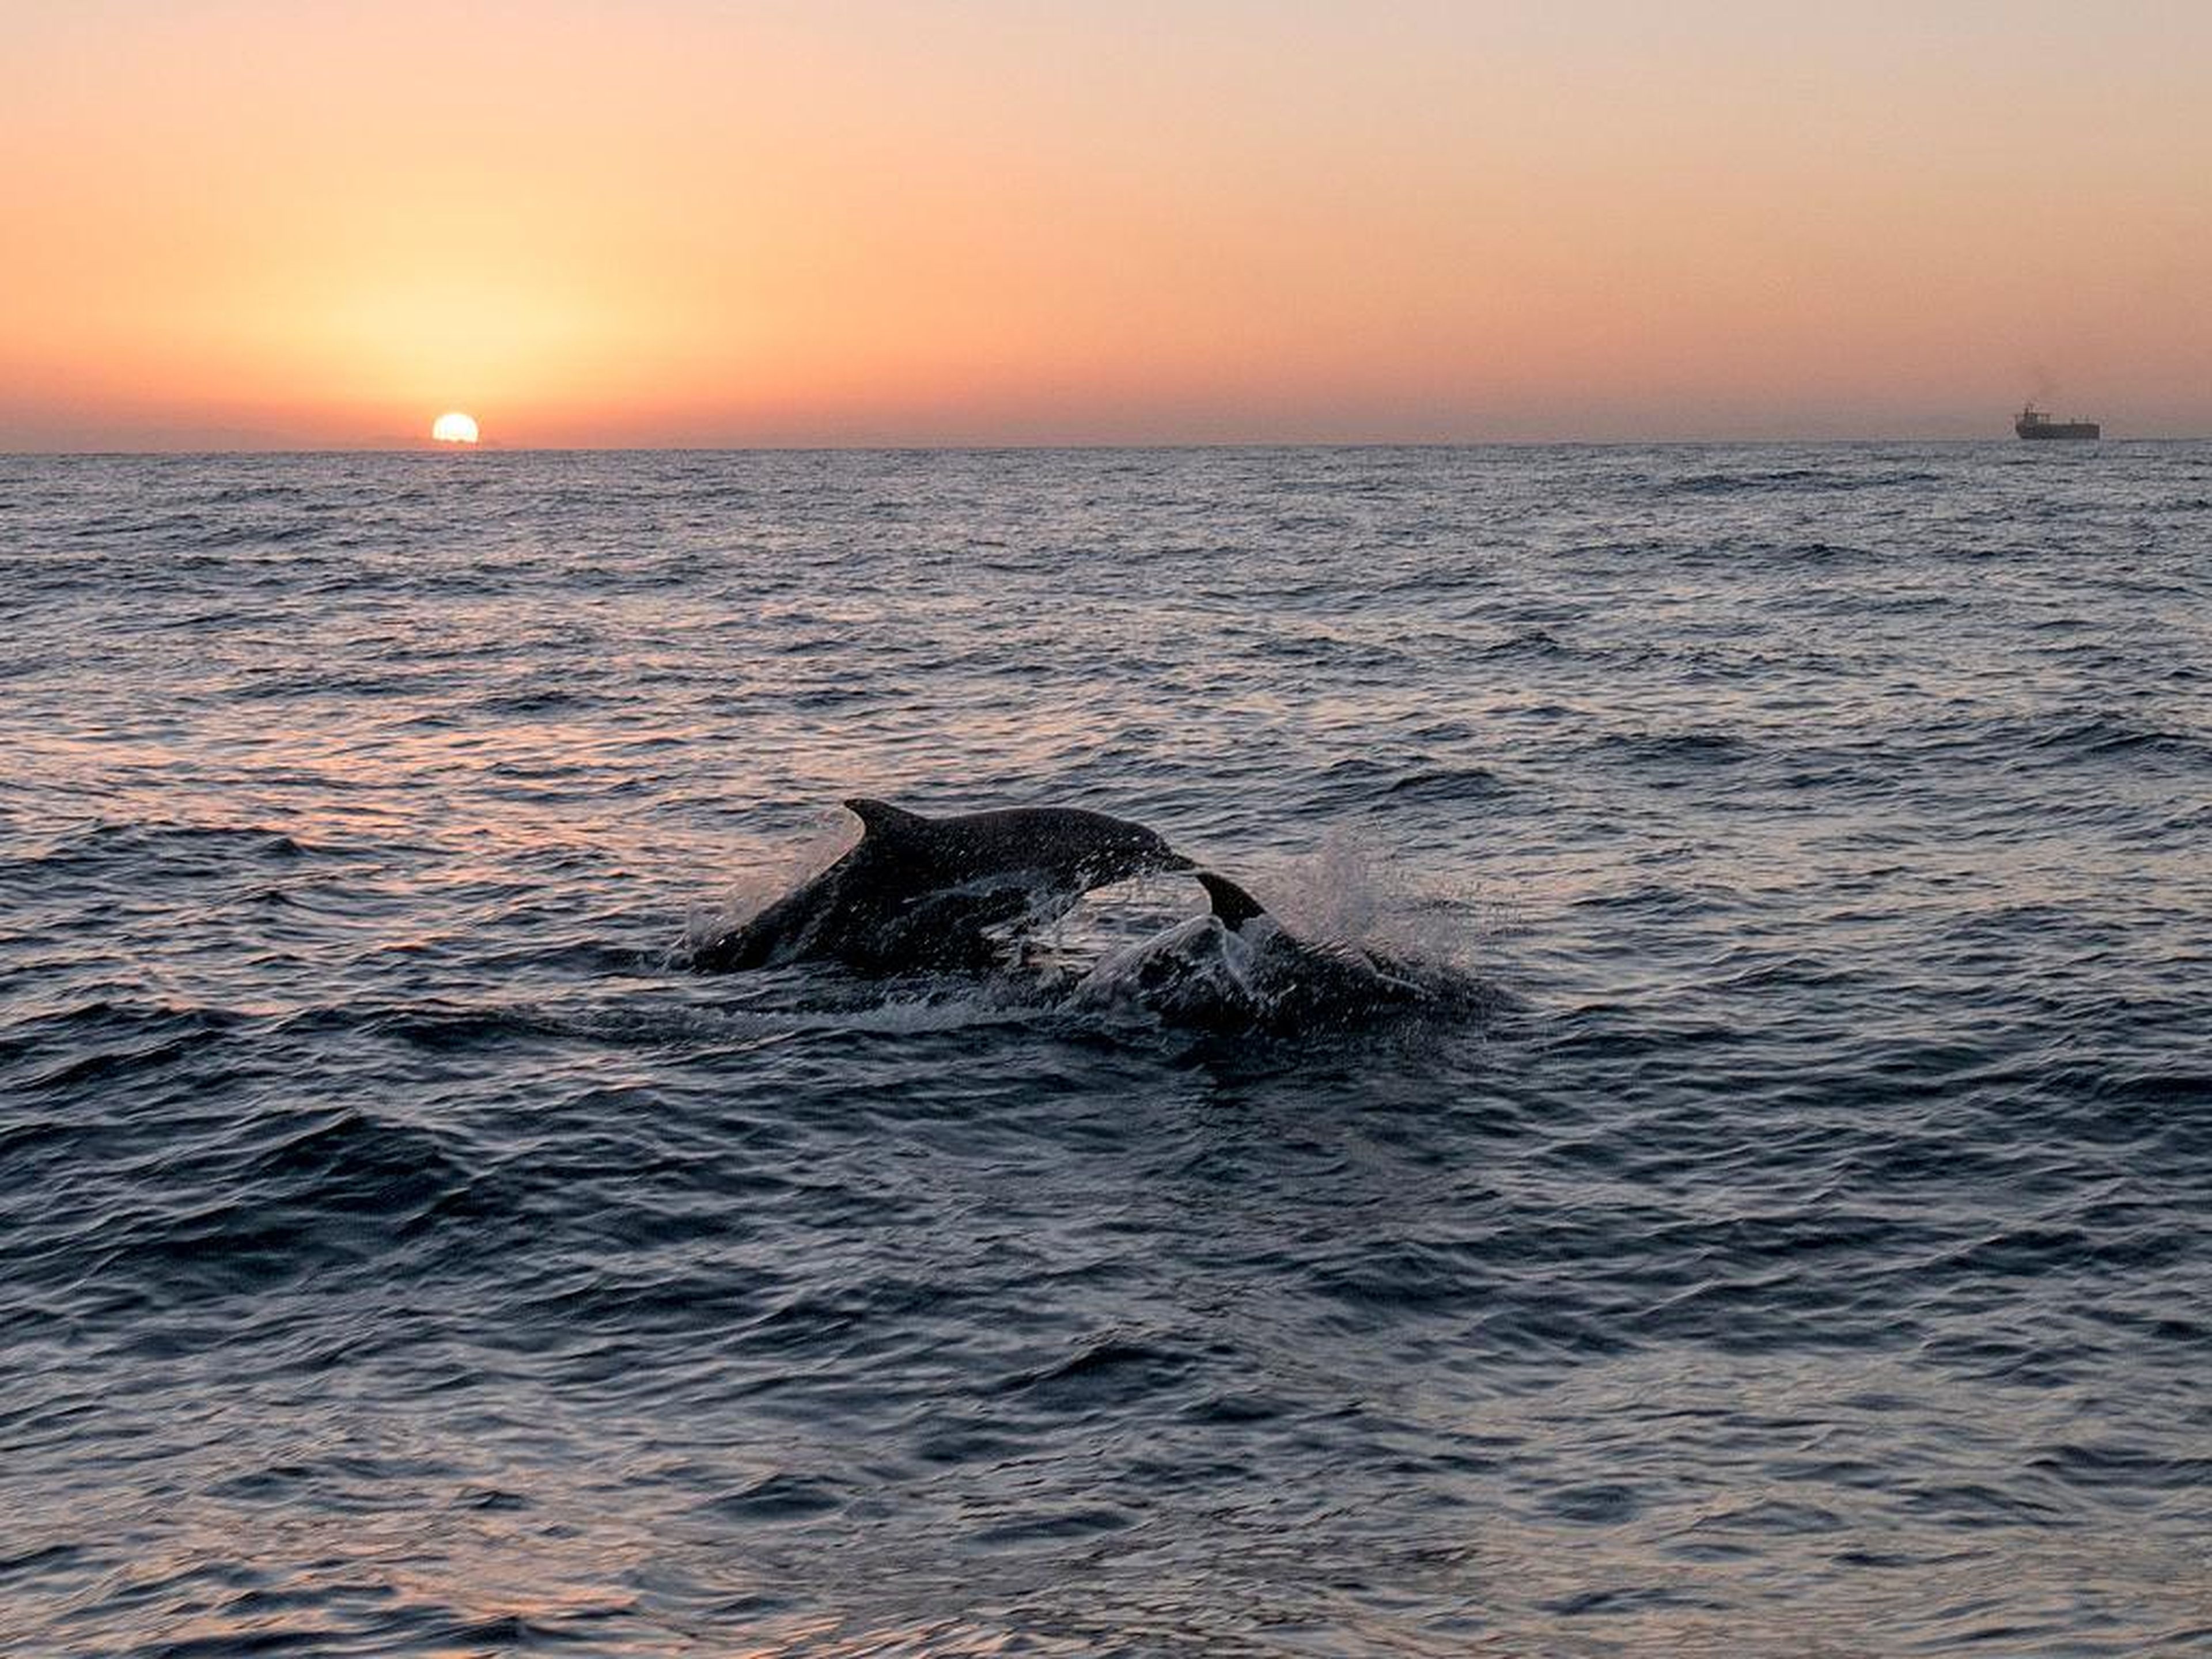 Ver a los delfines jugar mientras el sol se pone es un sueño hecho realidad ... y no tiene por qué costarte tanto.